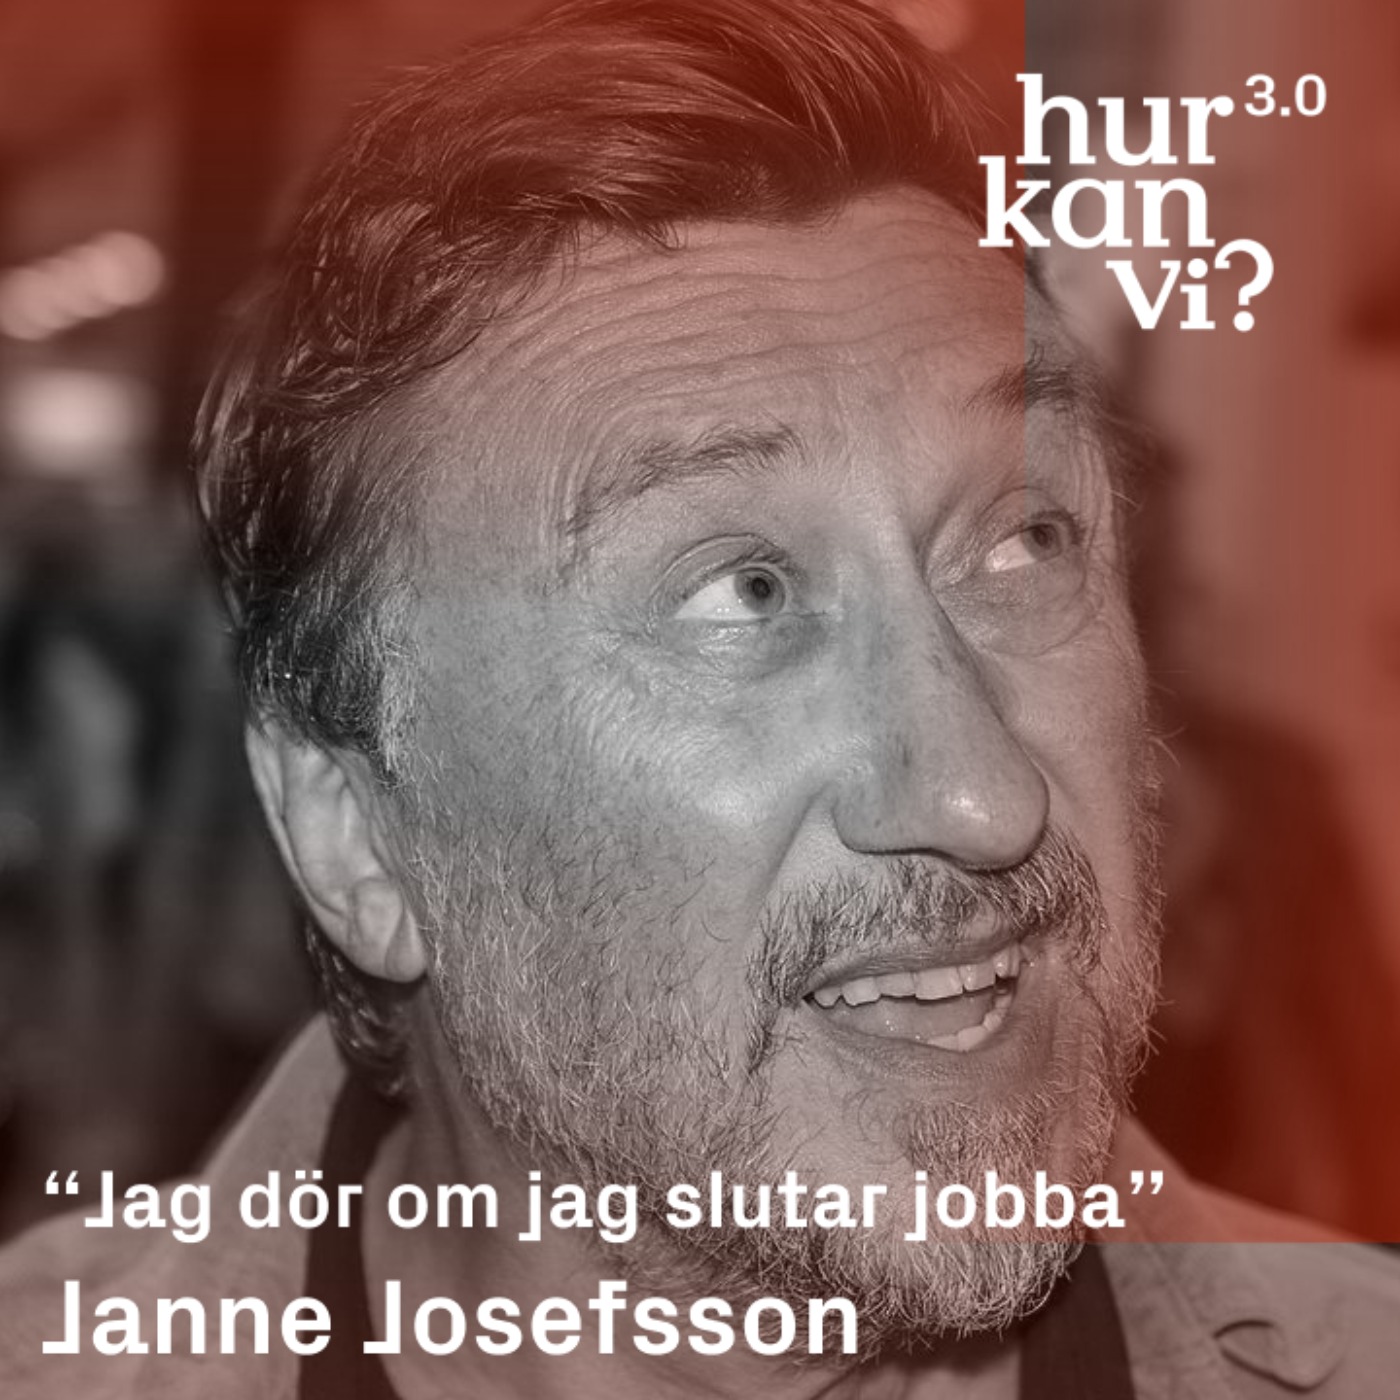 Janne Josefsson - “Jag dör om jag slutar jobba”